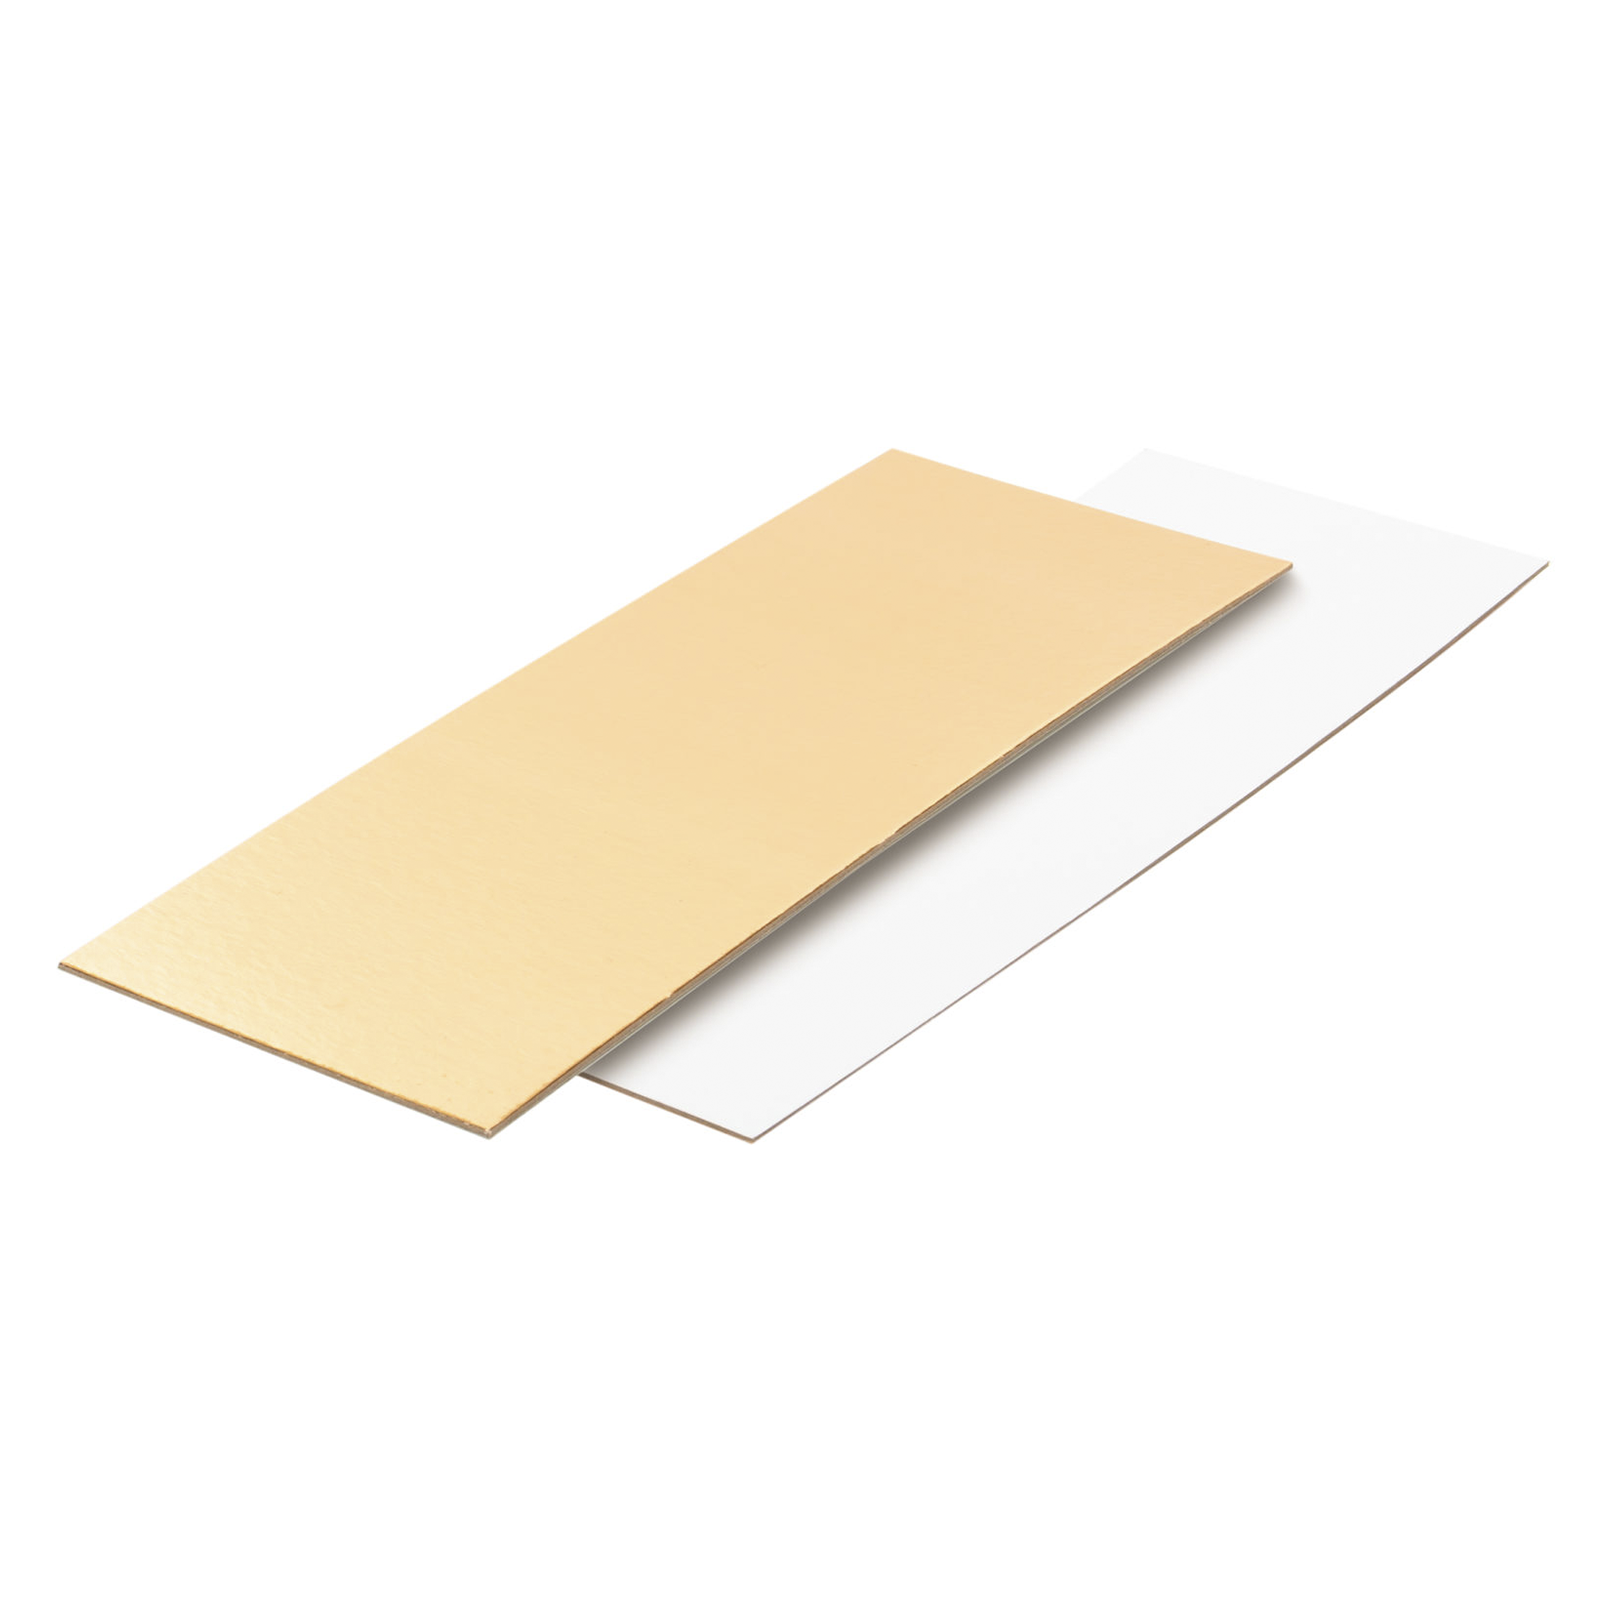 Подложка для рулета прямоугольная Золото/Белая 20,5х11,4 см, толщина 1,5 мм  | Фото — Магазин Andy Chef  1